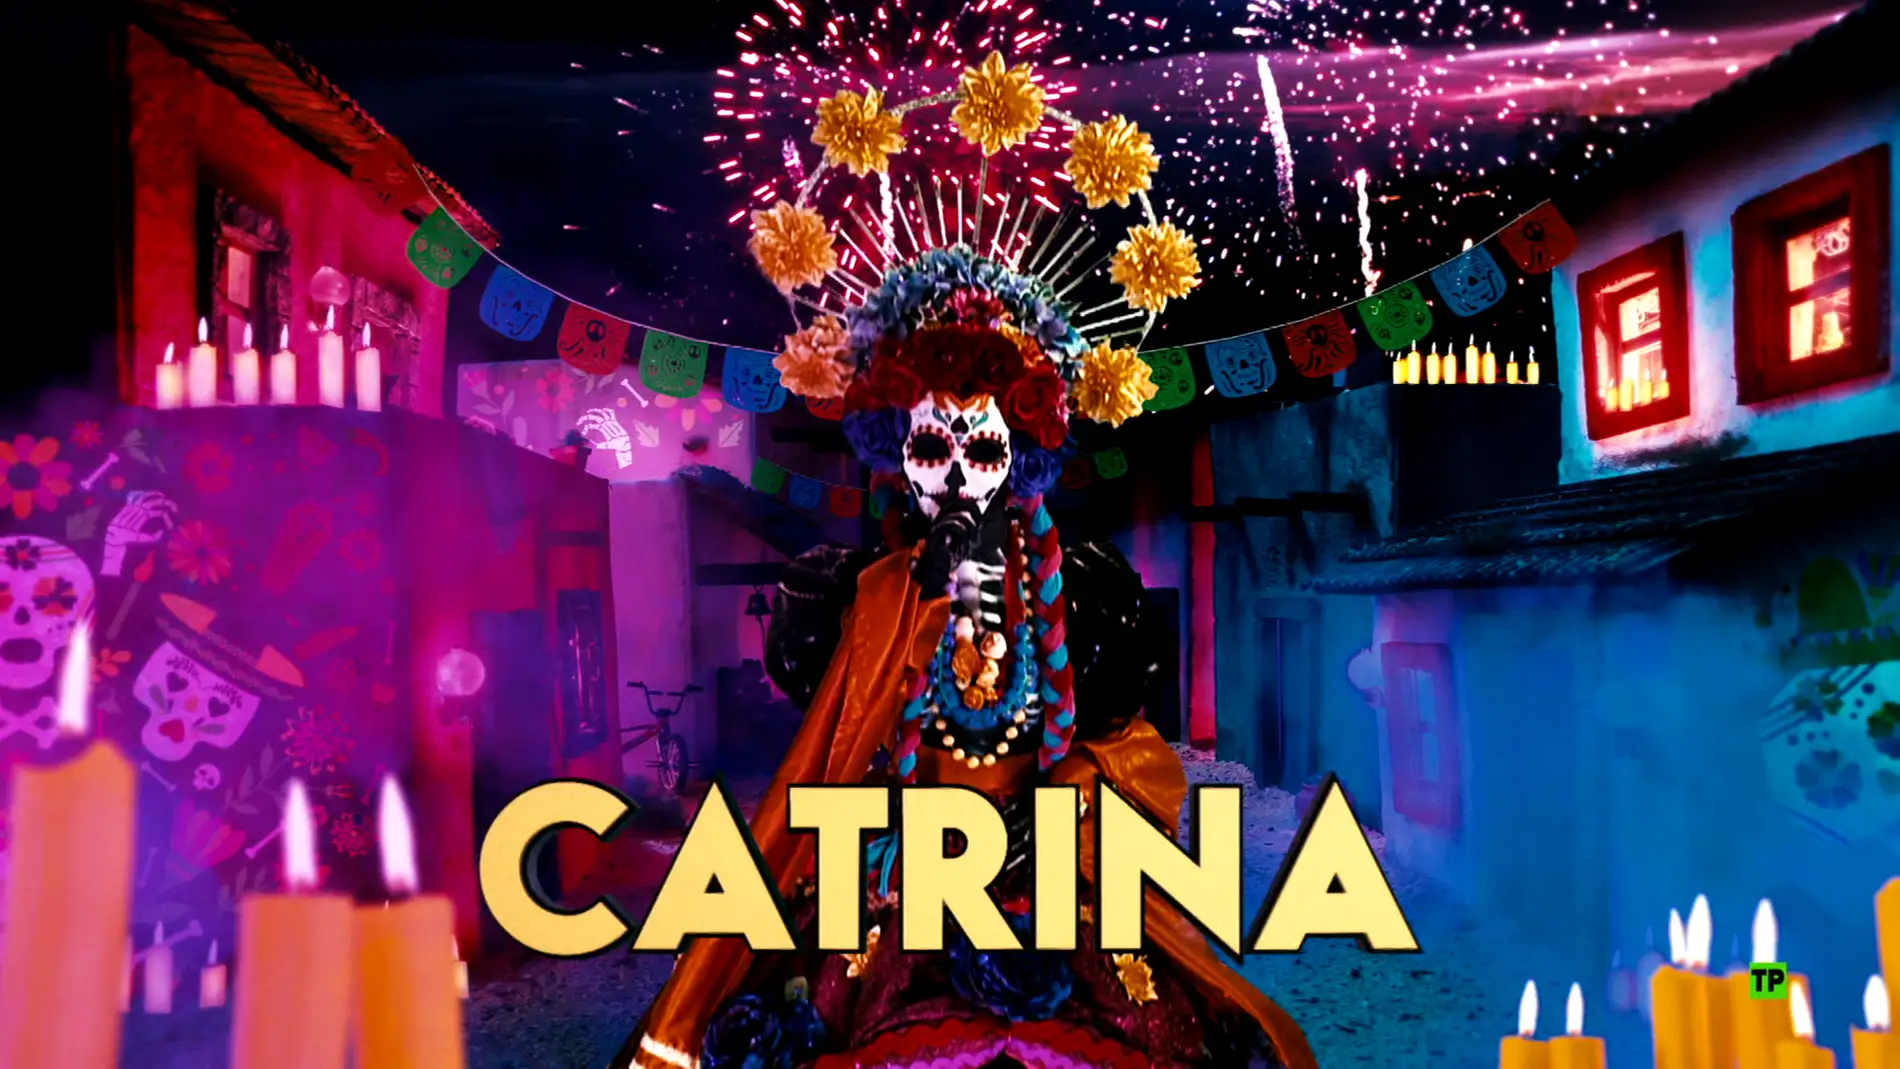 ¿Qué personaje famoso se esconde detrás de la máscara de Catrina?